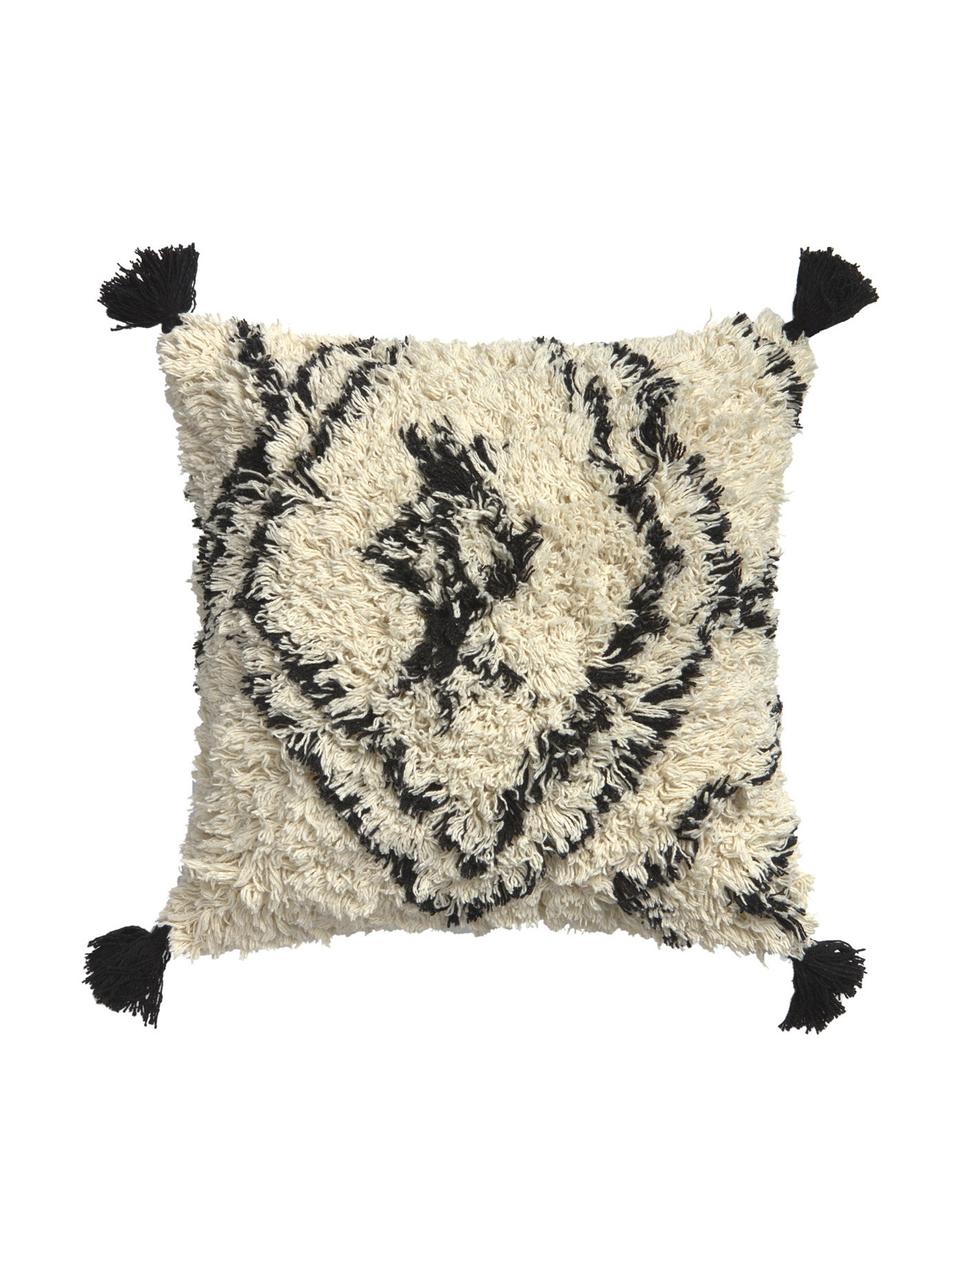 Poszewka na poduszkę z chwostami Safro, 100% bawełna, Czarny, odcienie kremowego, S 45 x D 45 cm